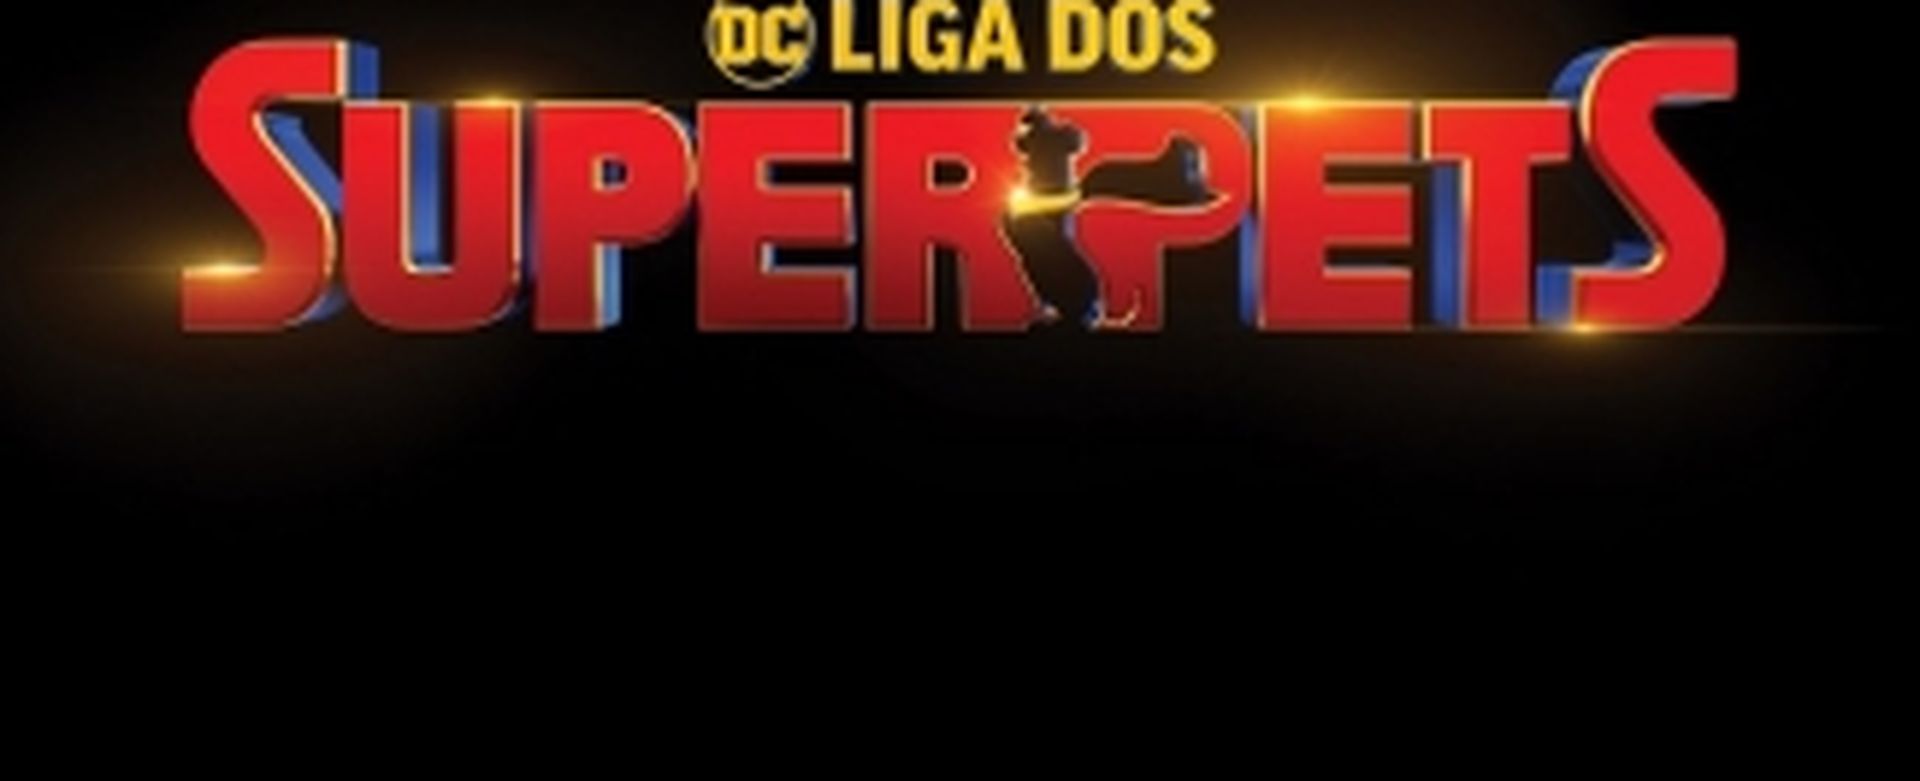 DC Liga dos SuperPets - 28/07/2022